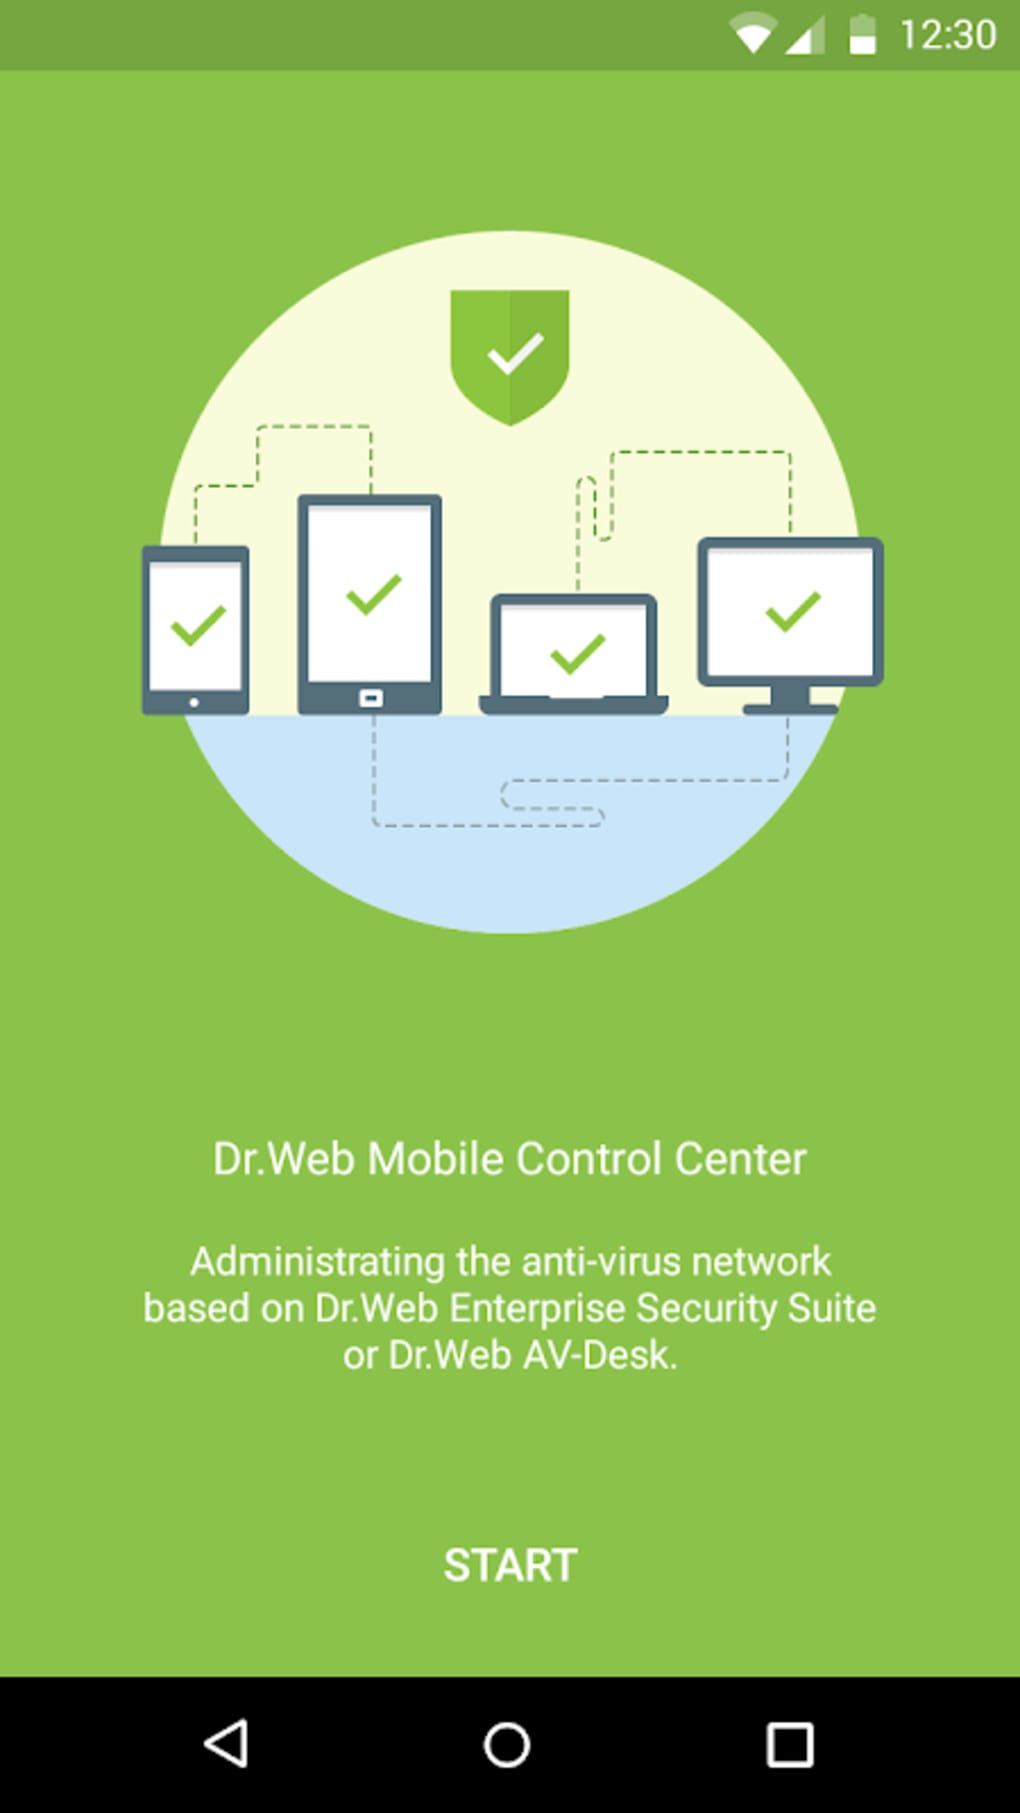 Центр dr web. Dr web центр управления. Dr.web mobile Control Center. Dr.web mobile Security Suite. Центр управления антивирусной сетью.